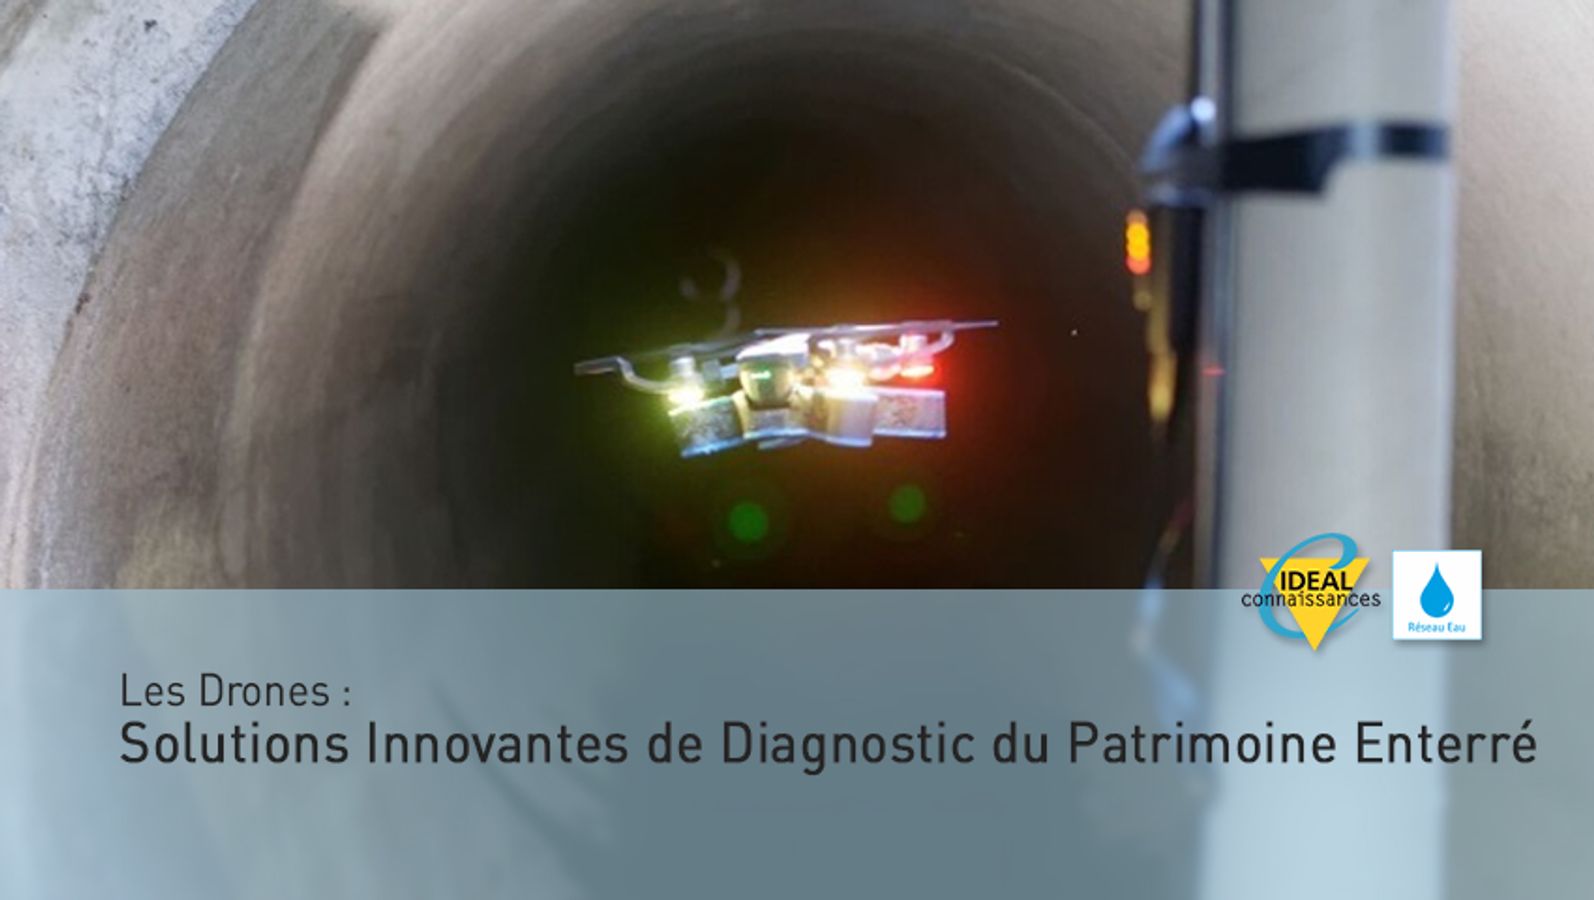 Les Drones : Solutions Innovantes de Diagnostic du Patrimoine Enterré